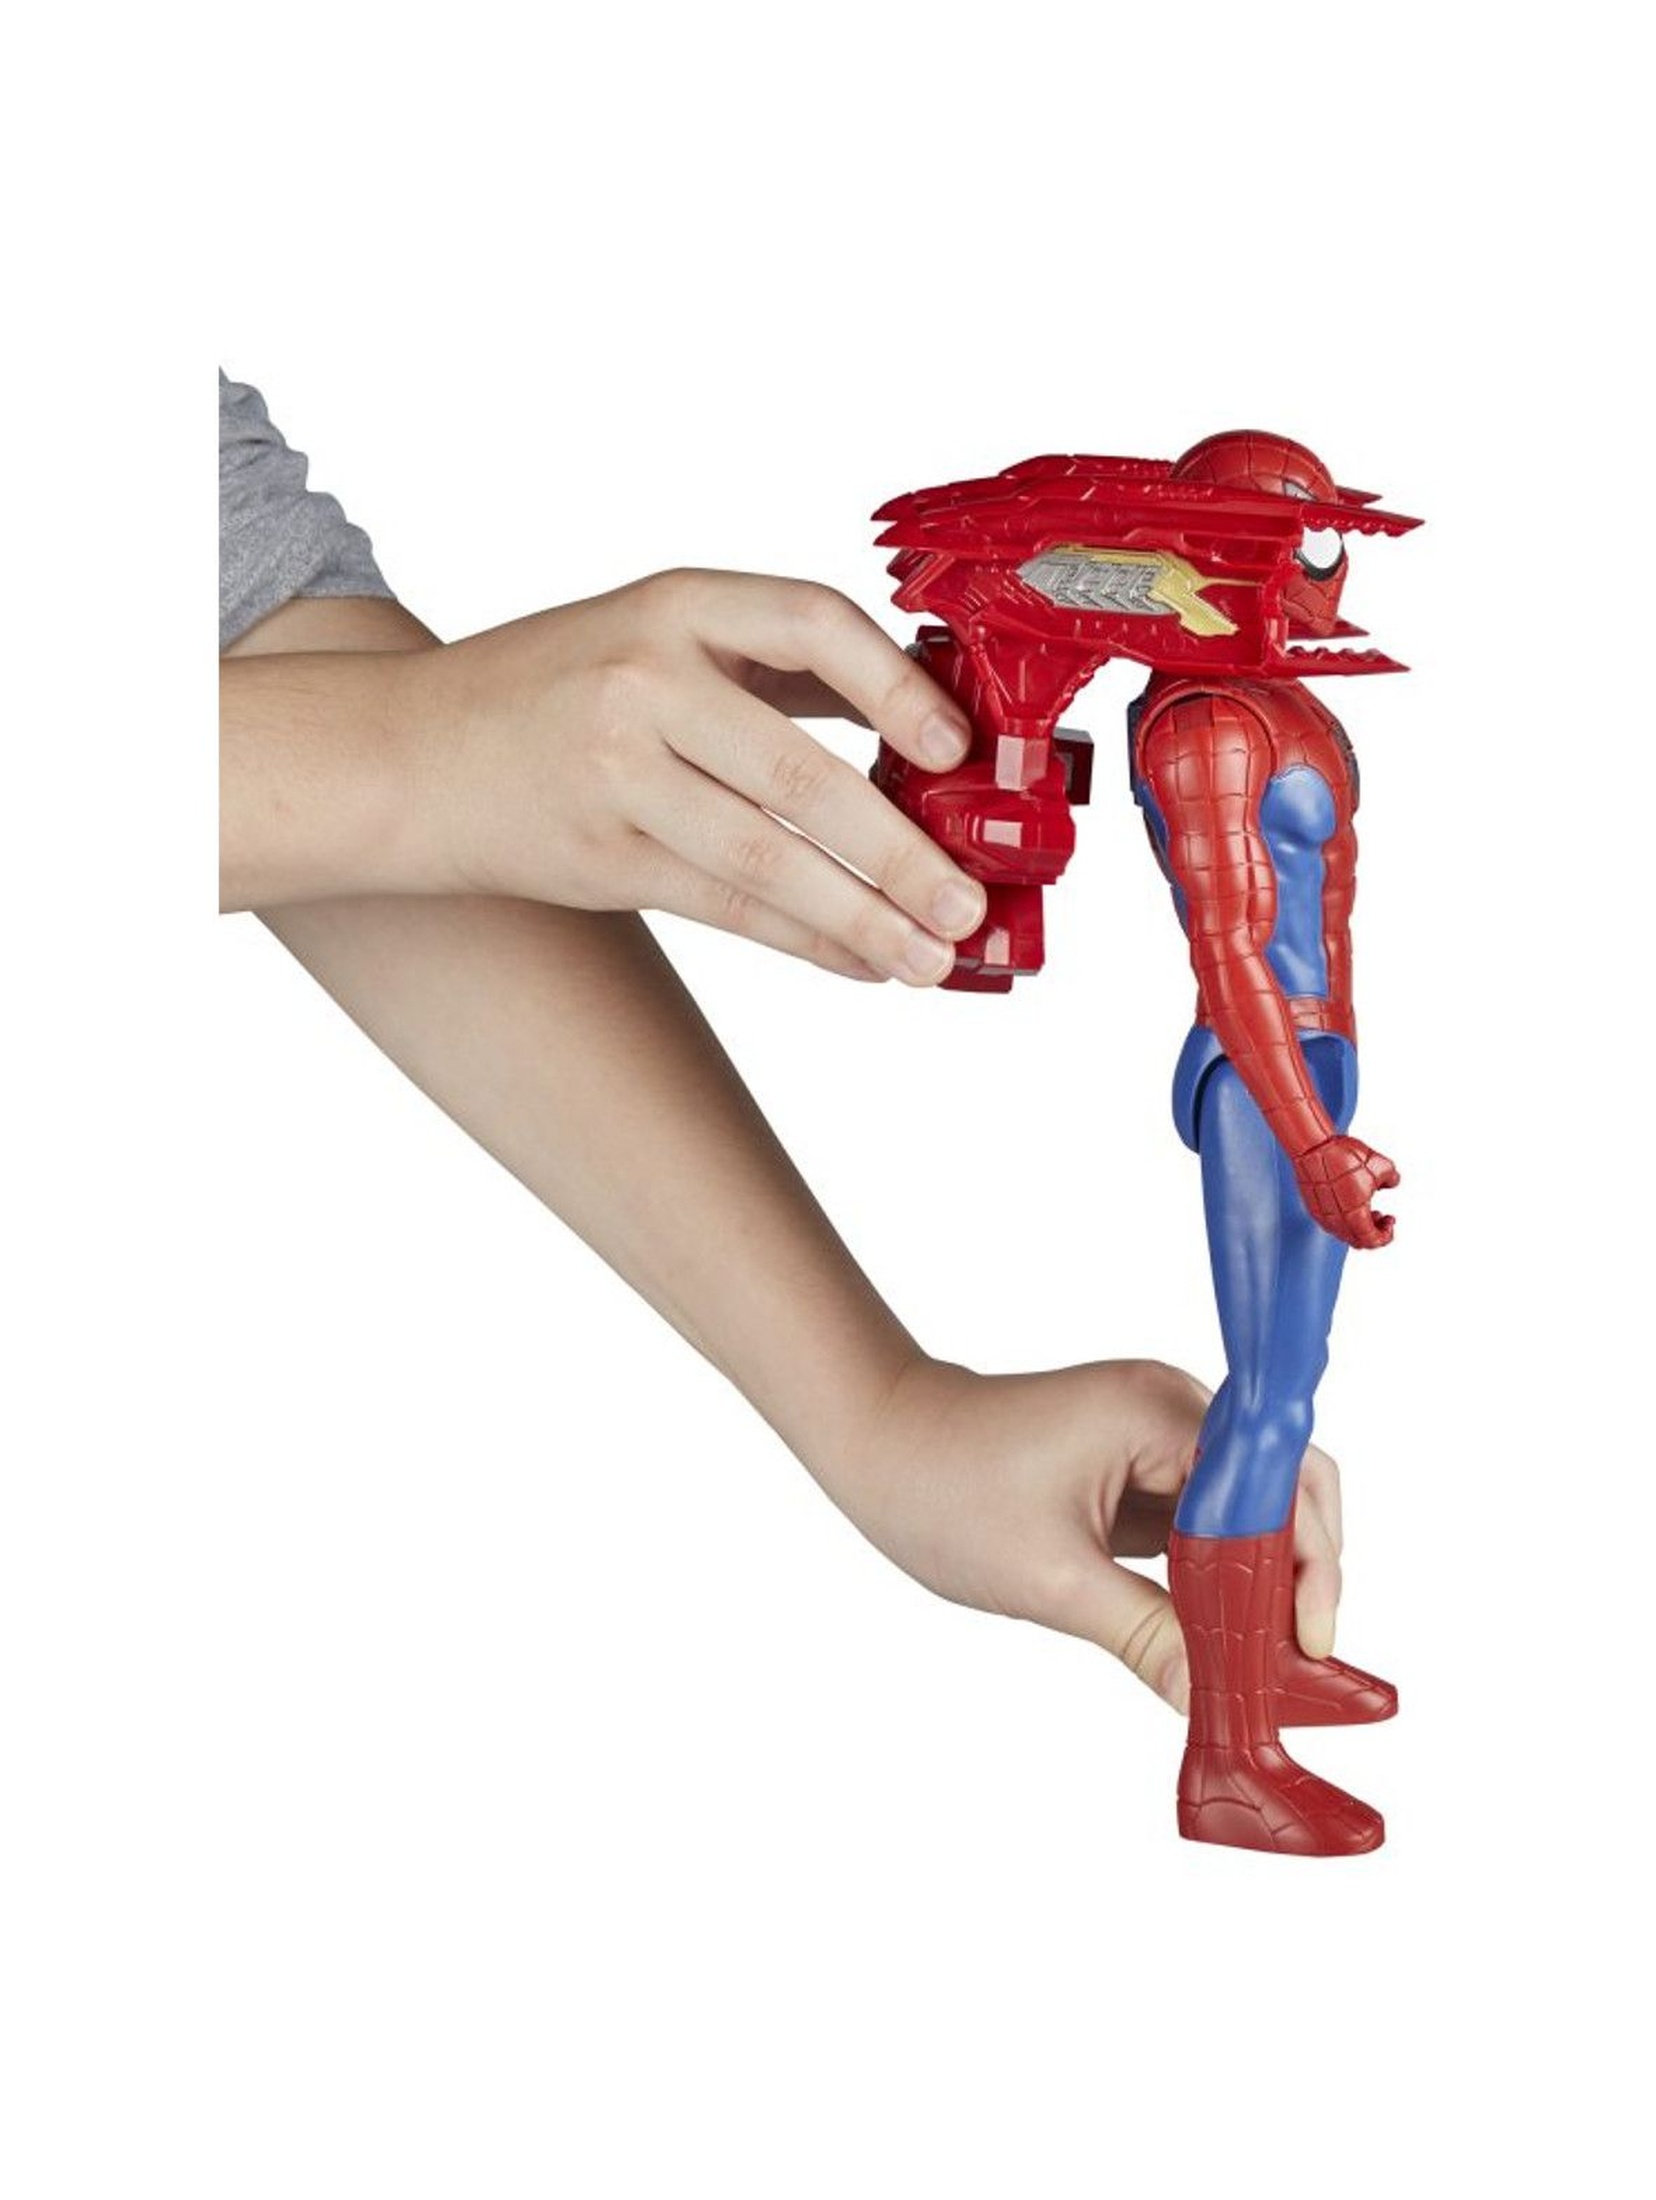 Spiderman figurka Titan Power Pack 4+